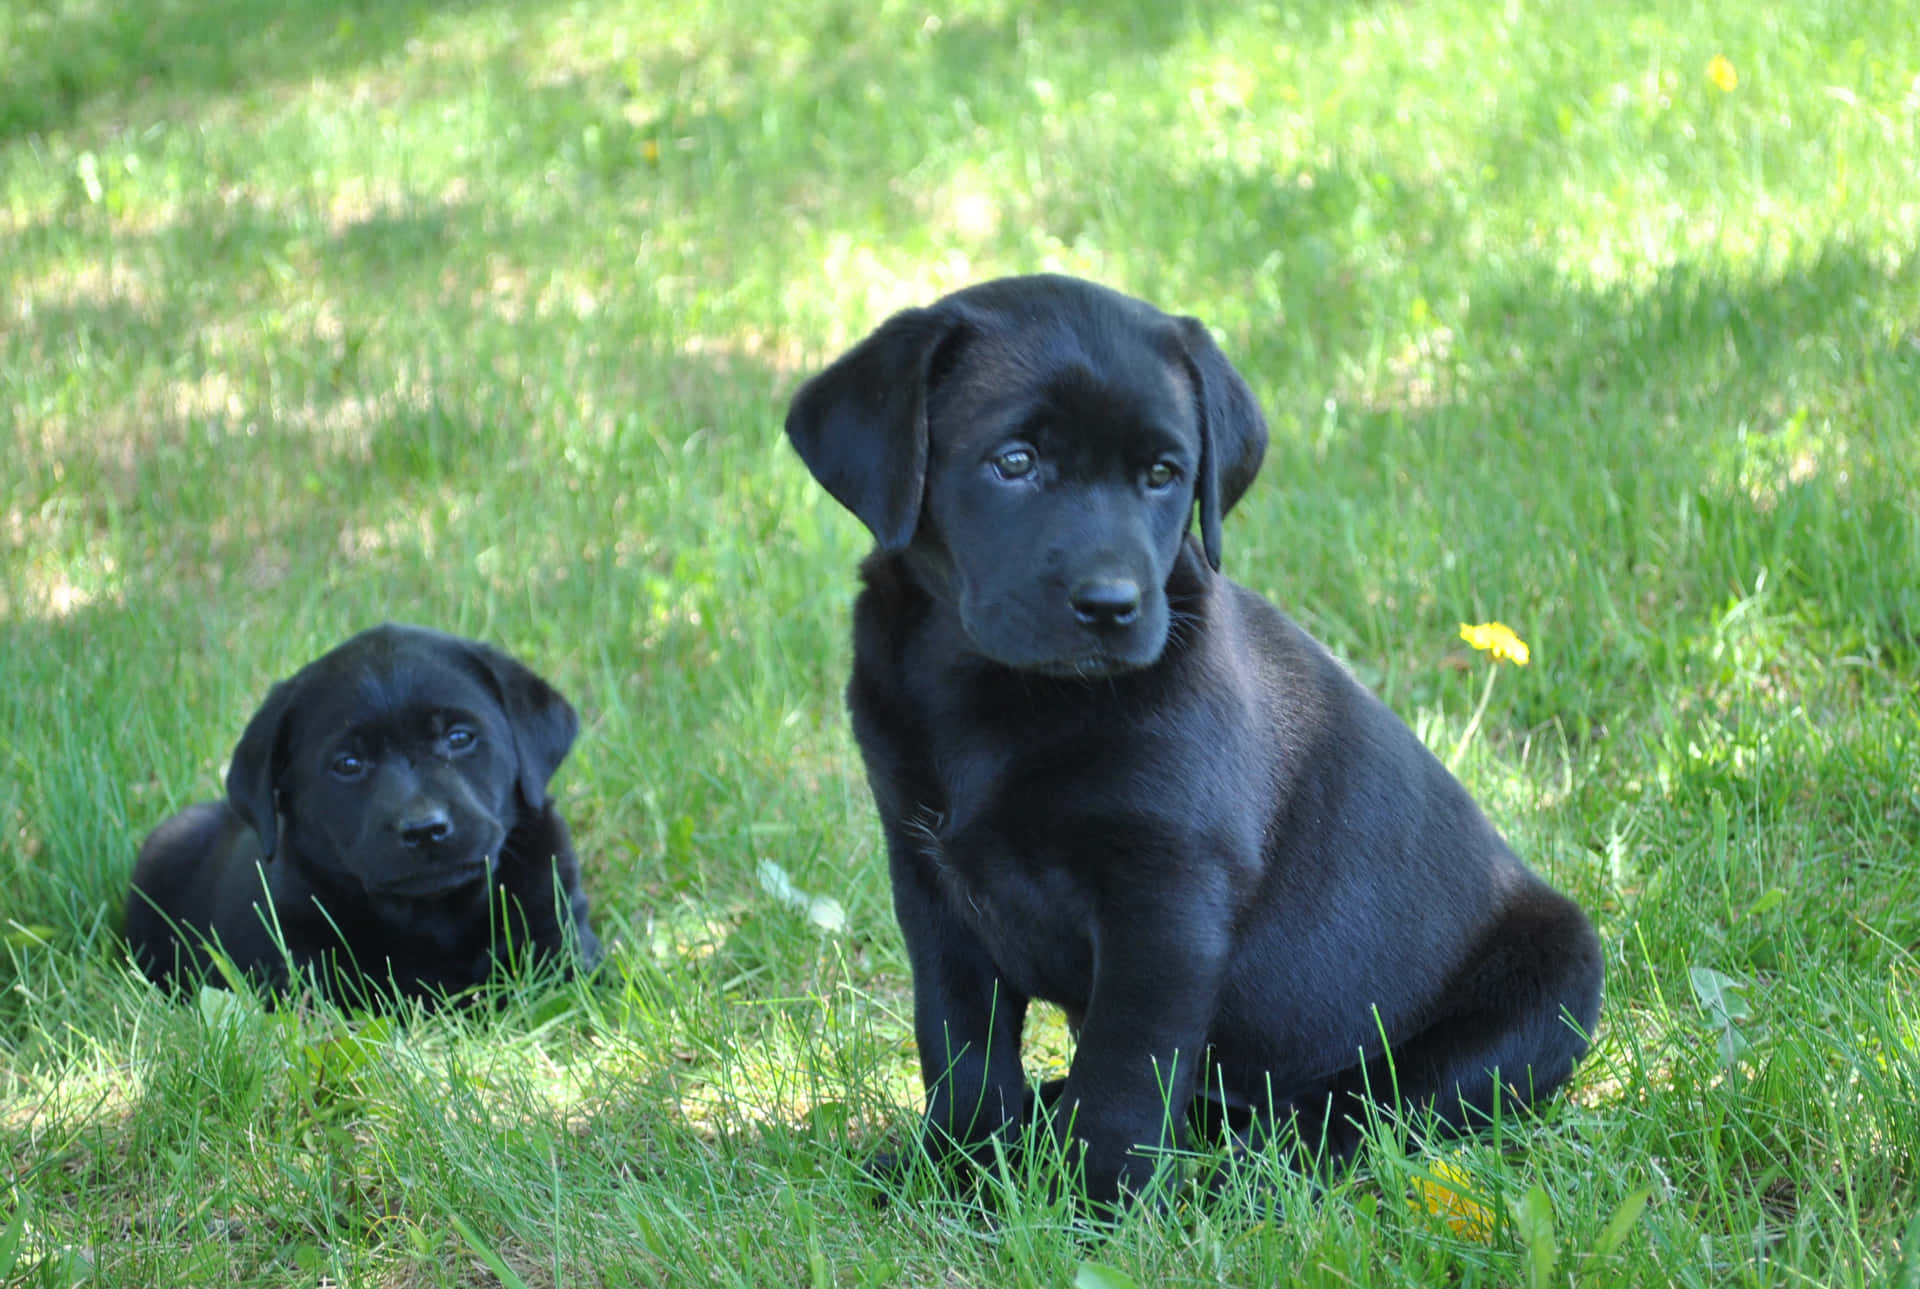 Imagende Cachorros De Labrador Negro En El Césped.